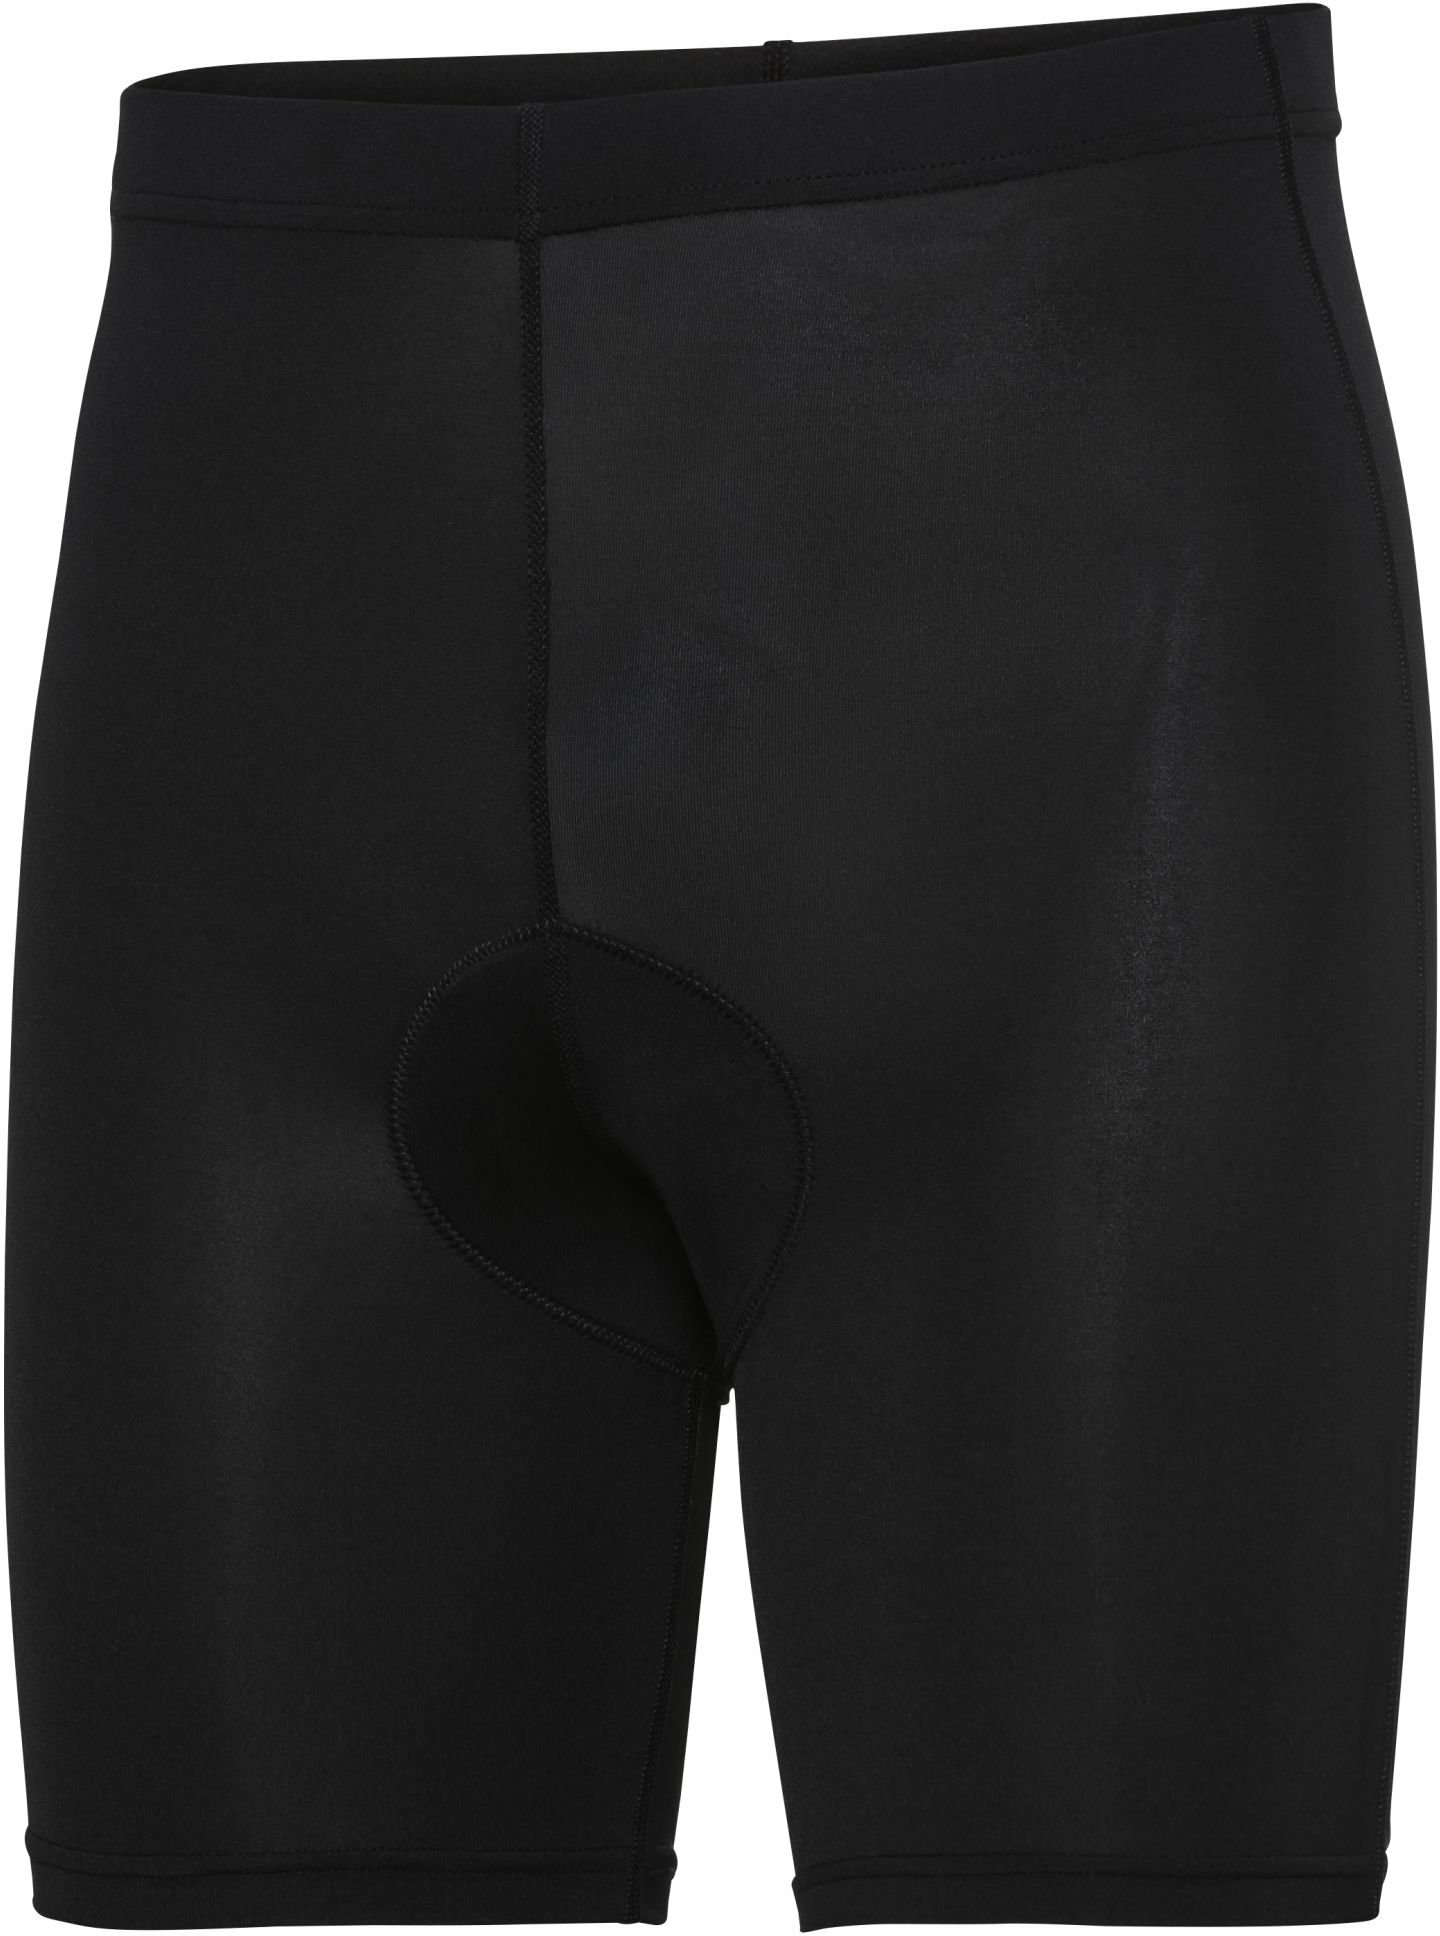 Bekleidung/Unterwäsche: Apura  Herren Unterhose Baselayer Shorts Pure M 